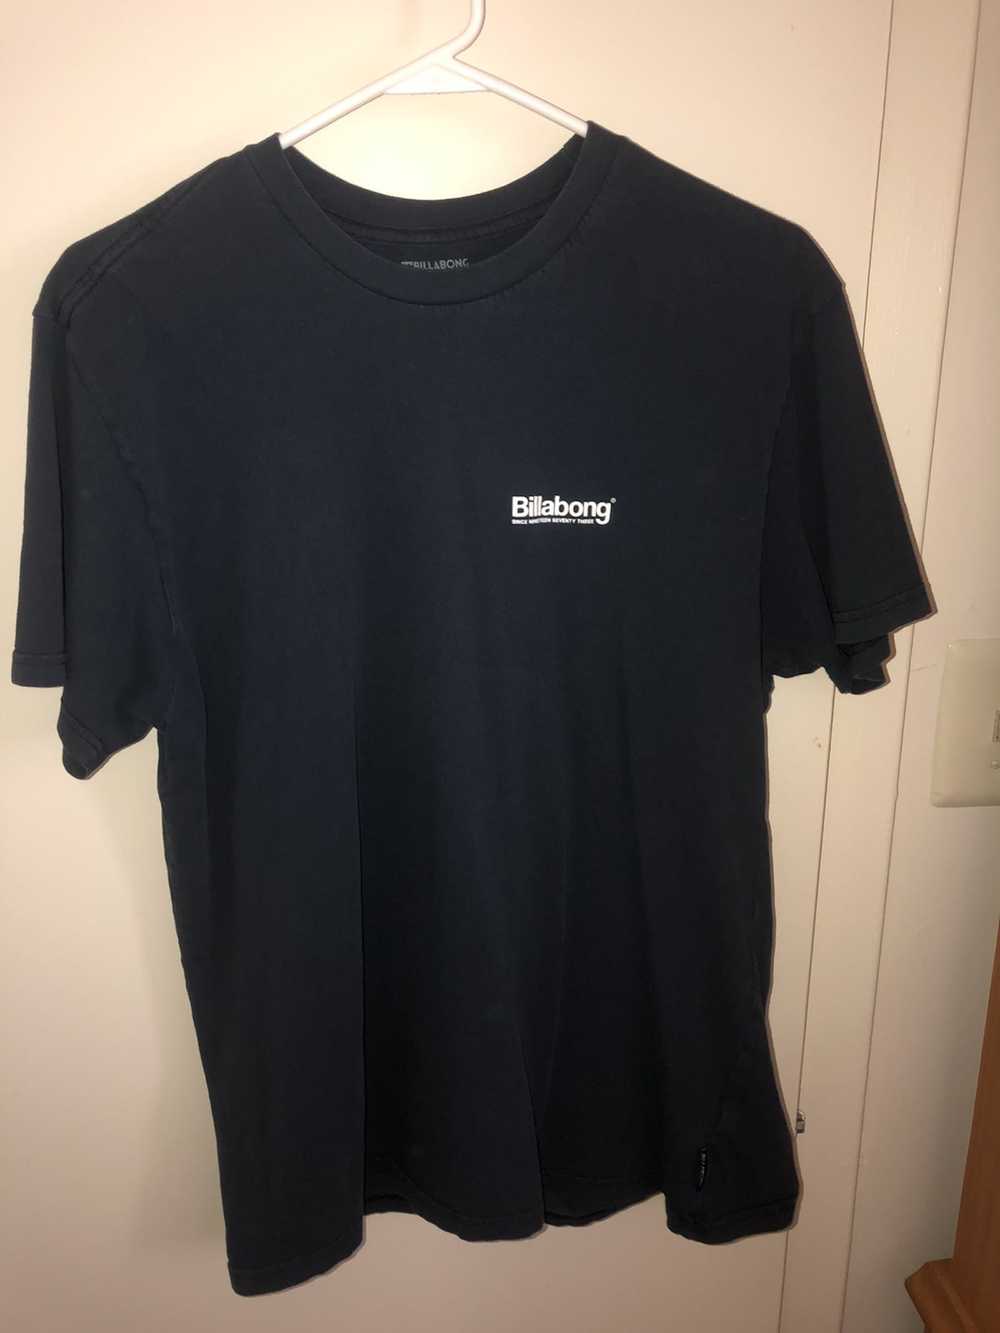 Billabong Men’s Billabong t shirt Navy Sized L - image 2